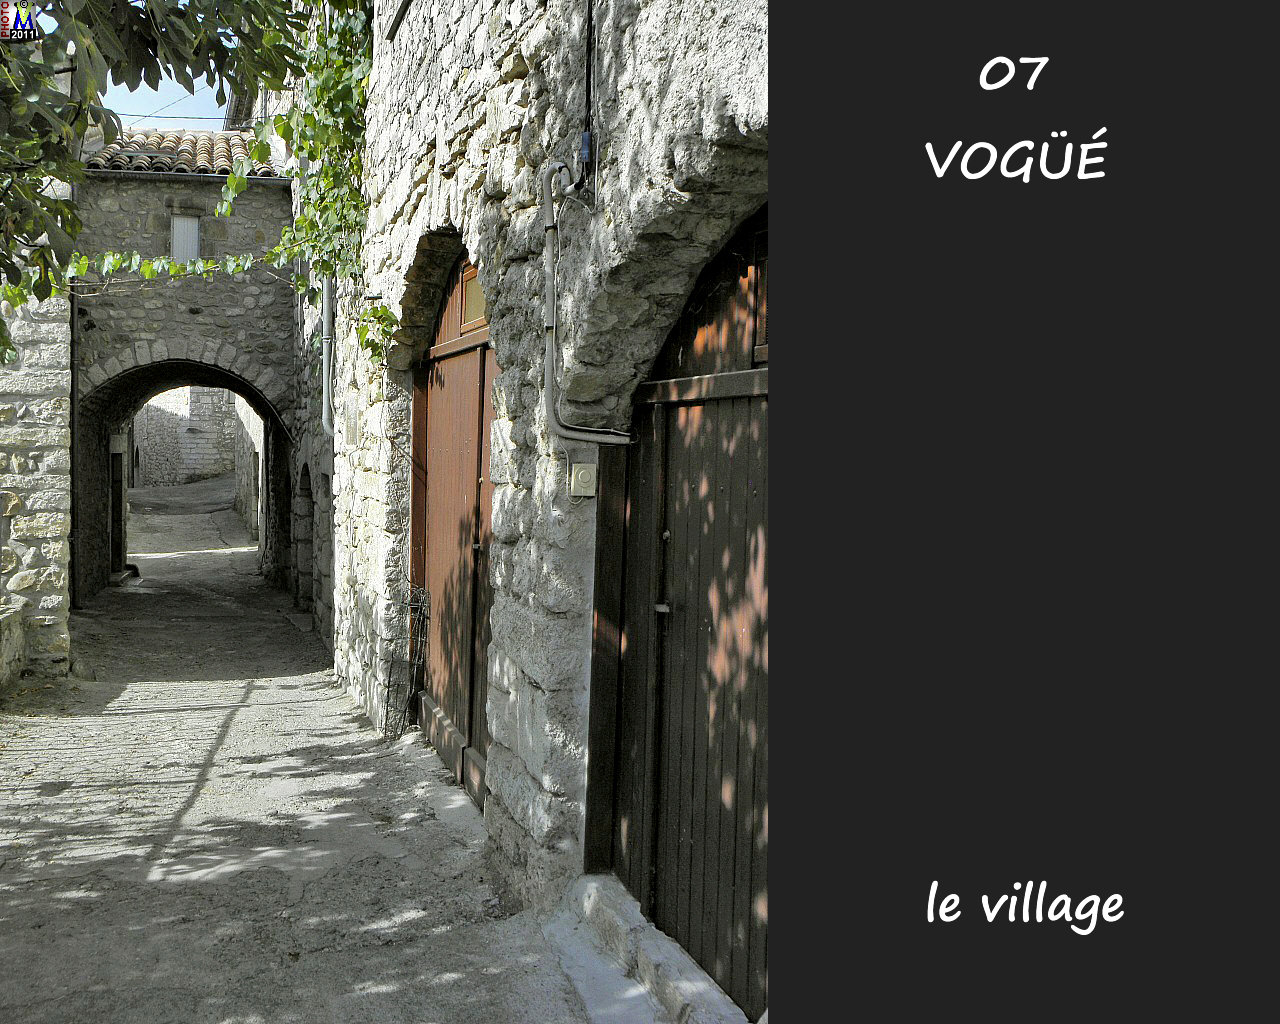 07VOGUE_village_130.jpg